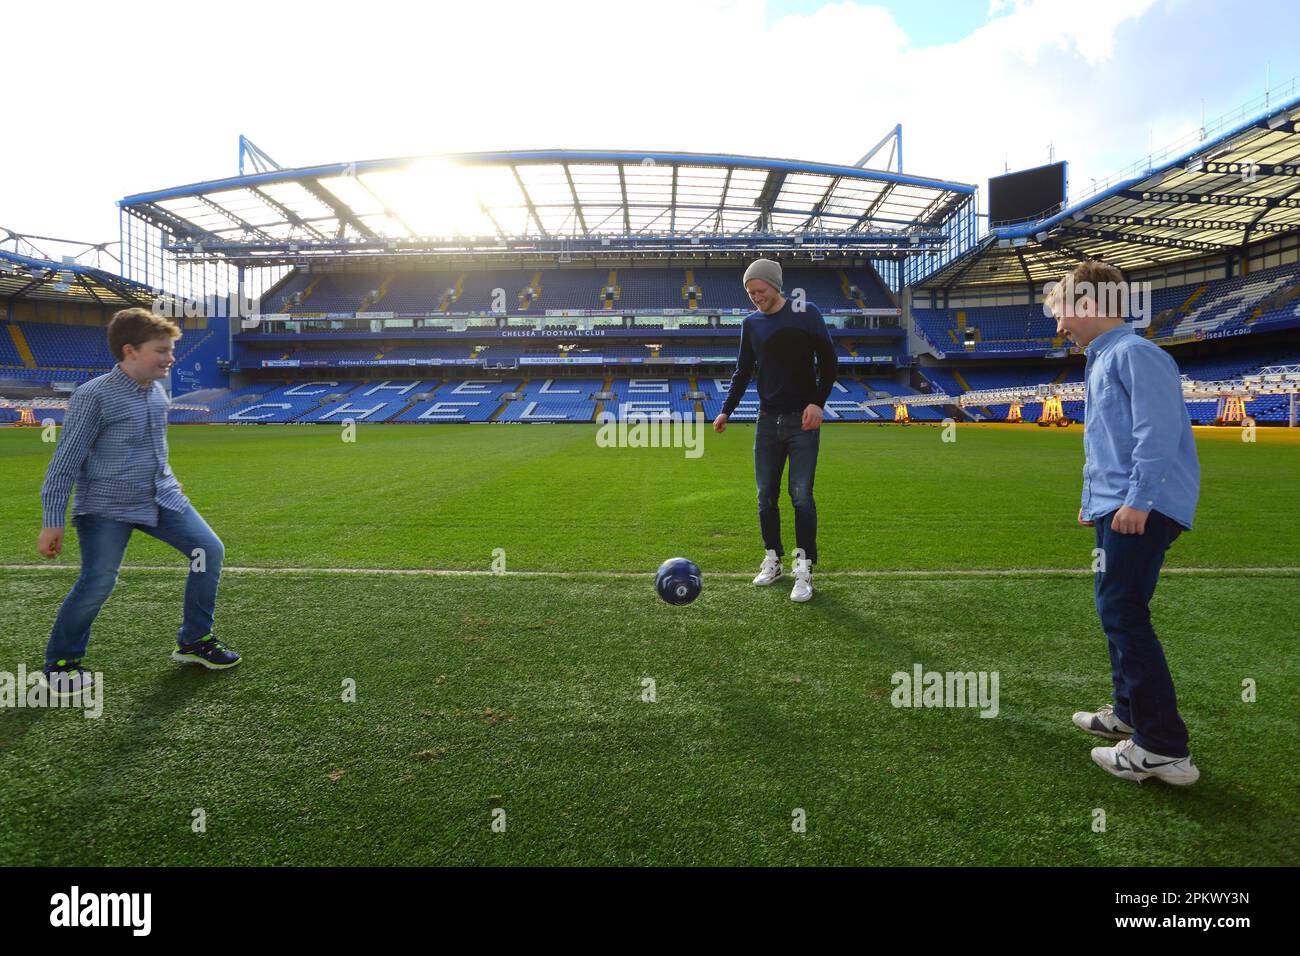 Royaume-Uni / Londres / Stamford Bridge / Premier League club Chelsea / Andre Schuerle avec des enfants jouant au stade , 13.Féruar 2014. Banque D'Images